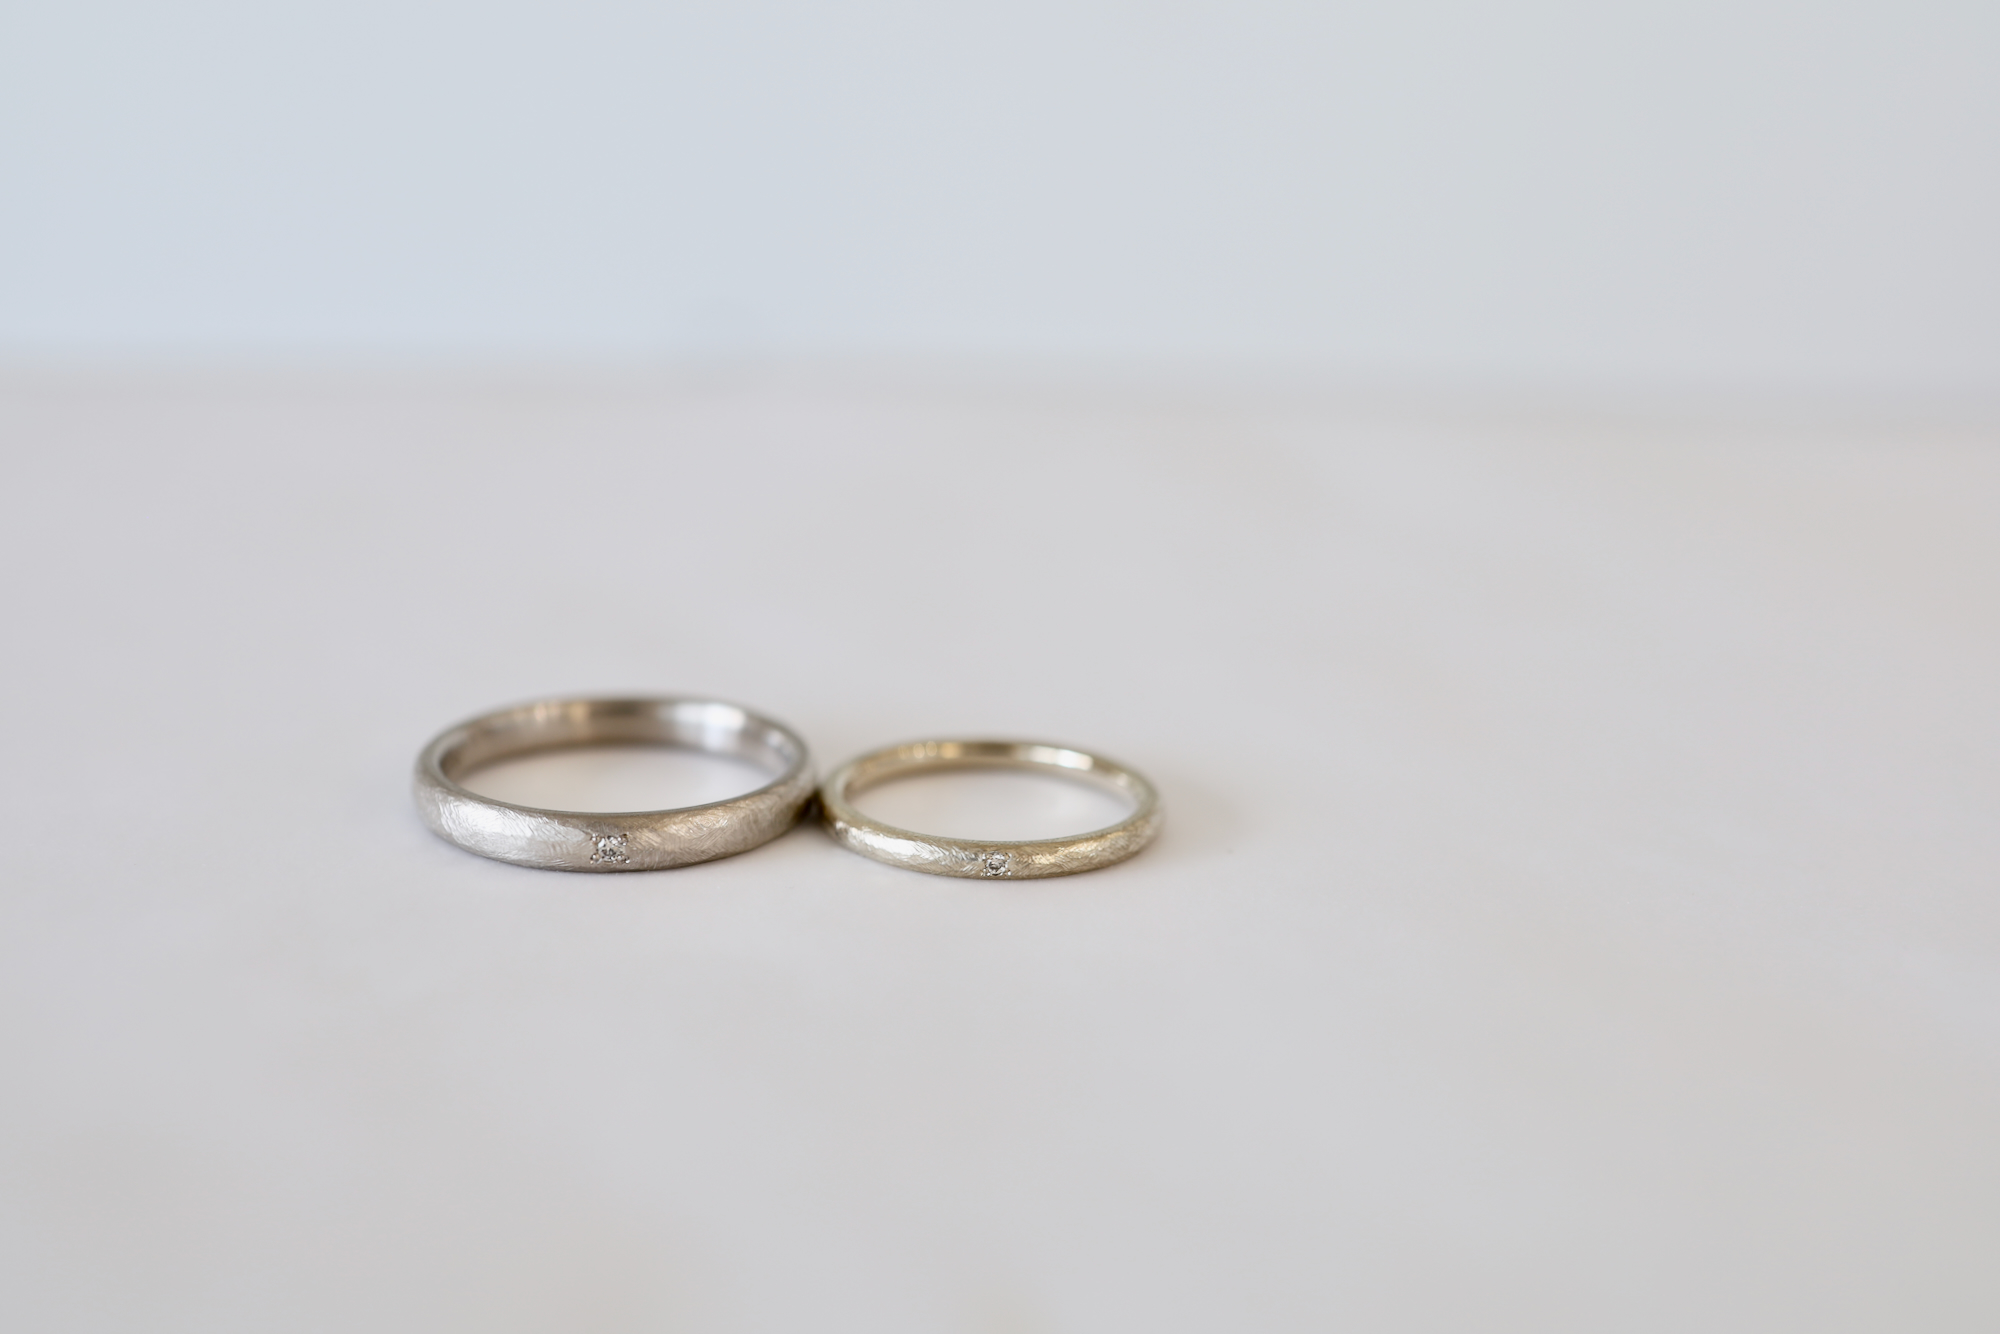 アンティークな雰囲気の結婚指輪